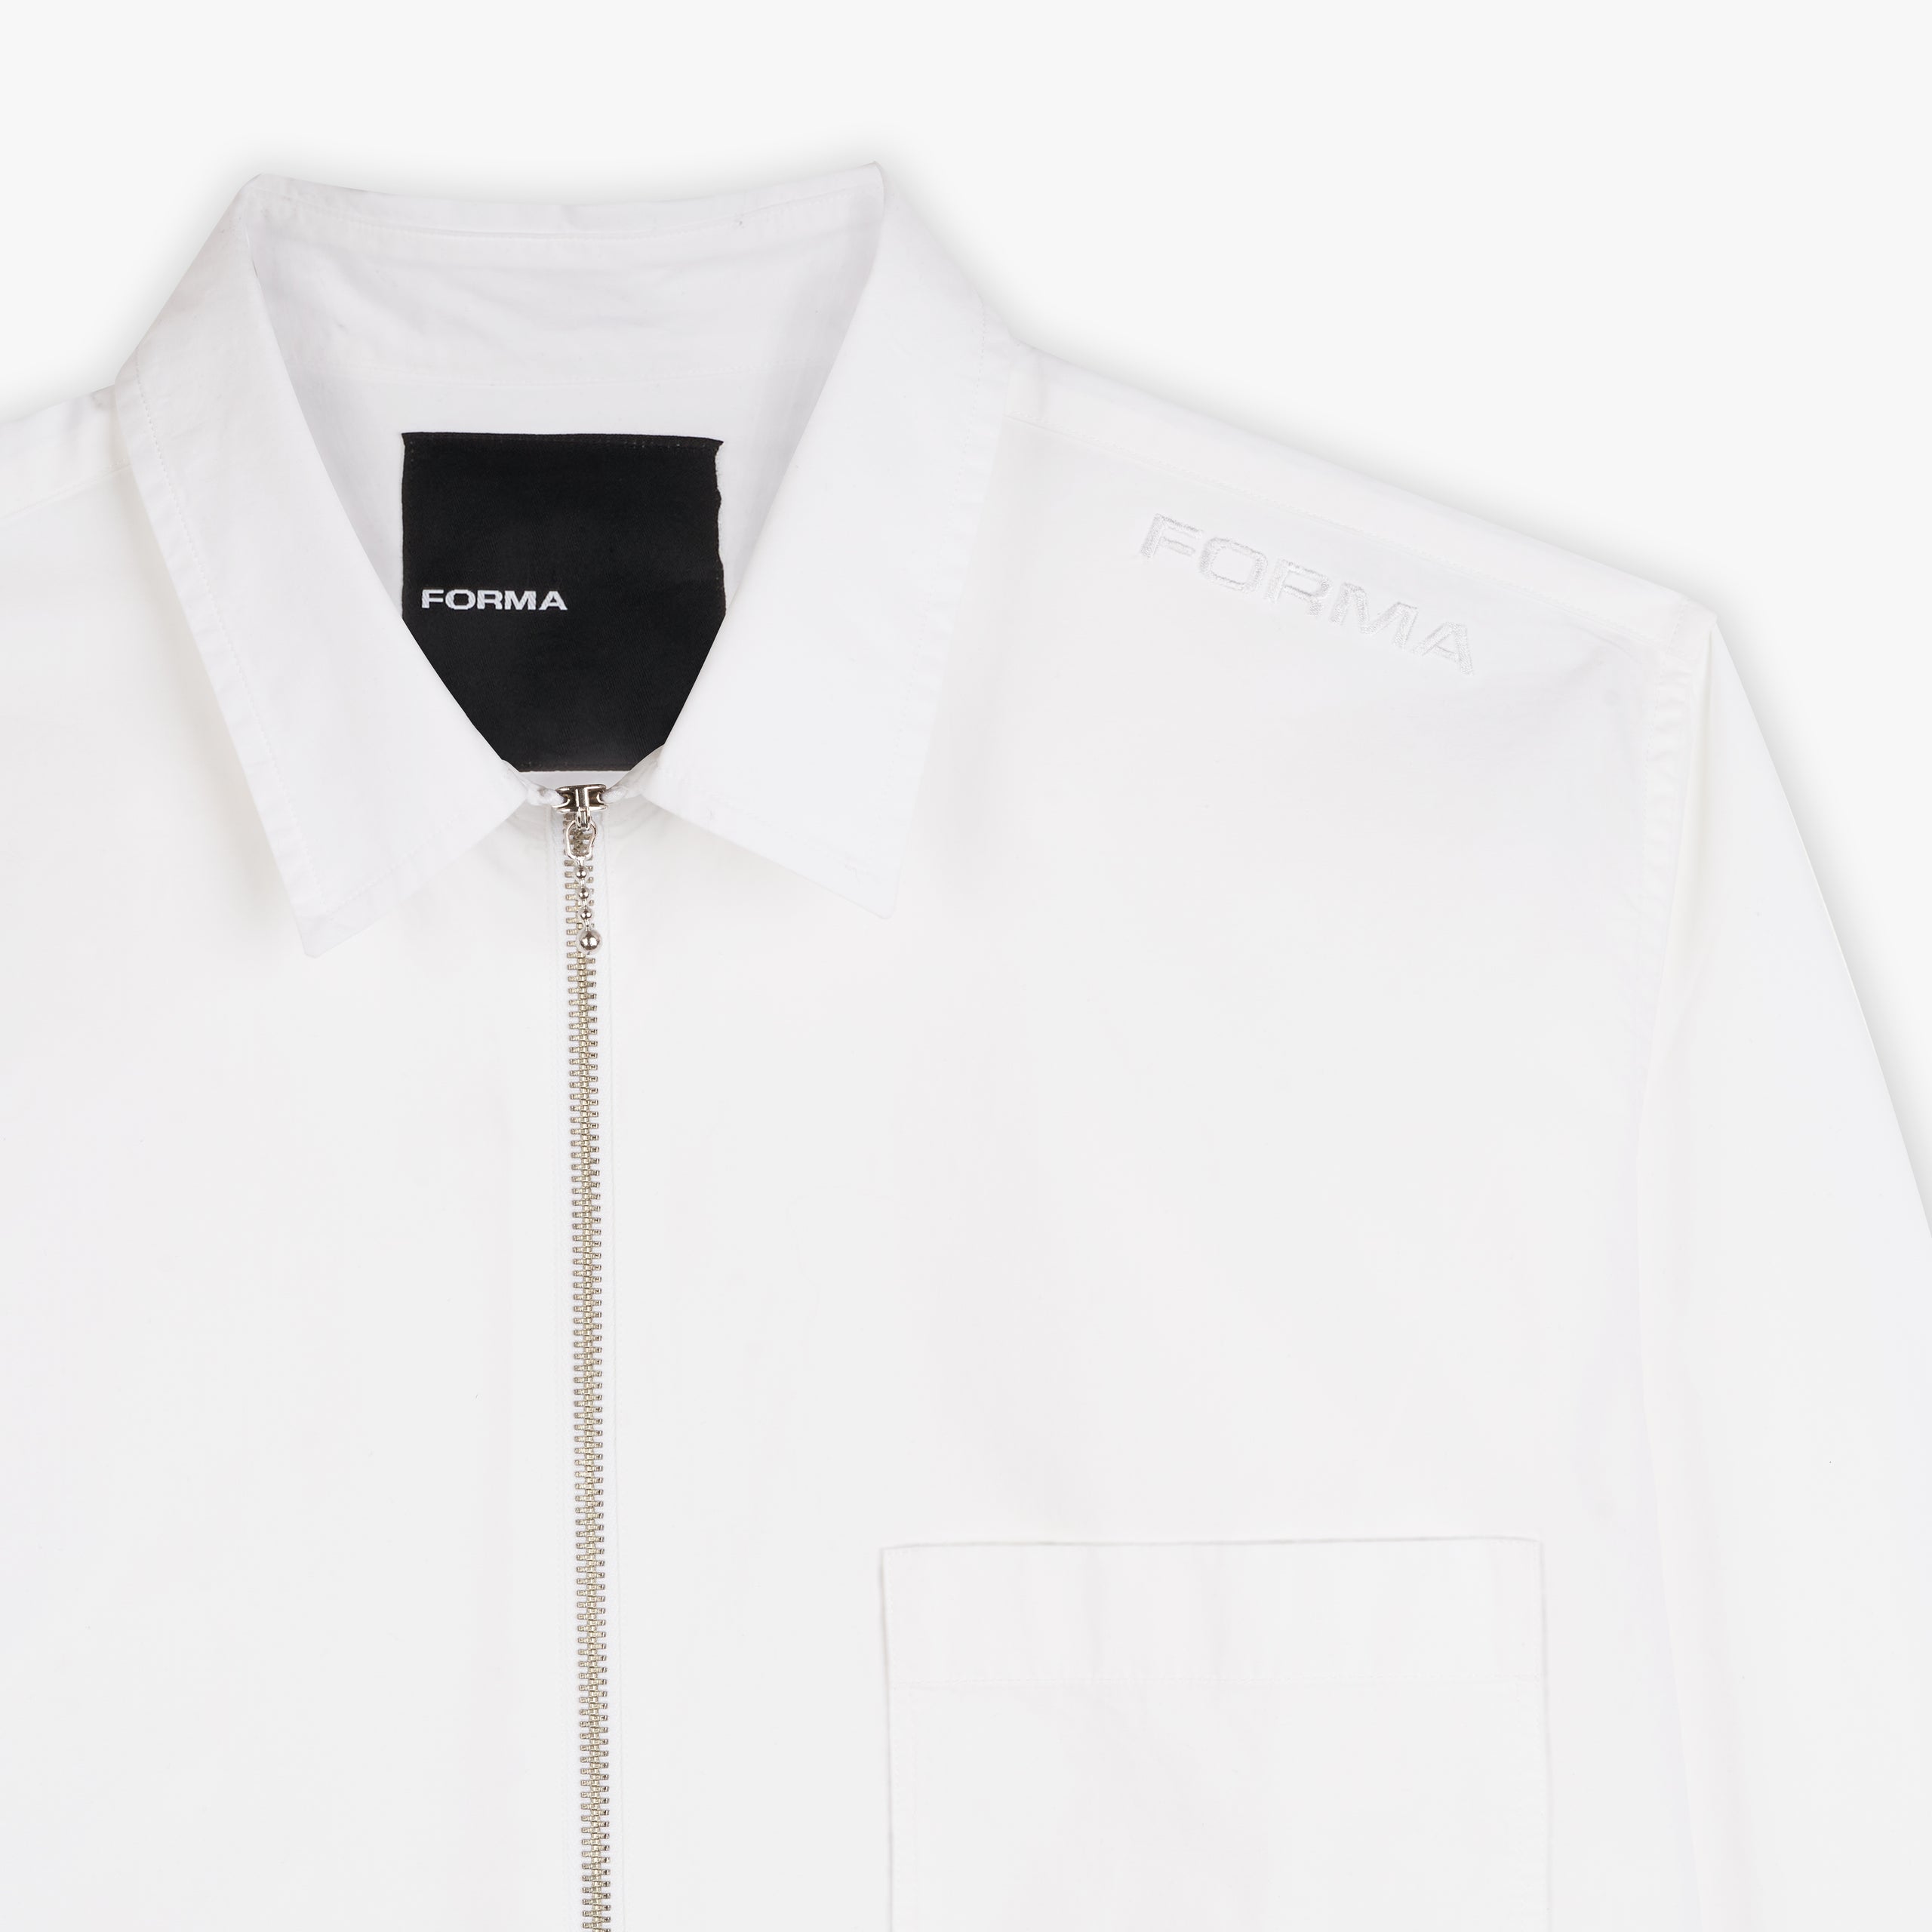 Forma zip shirt white